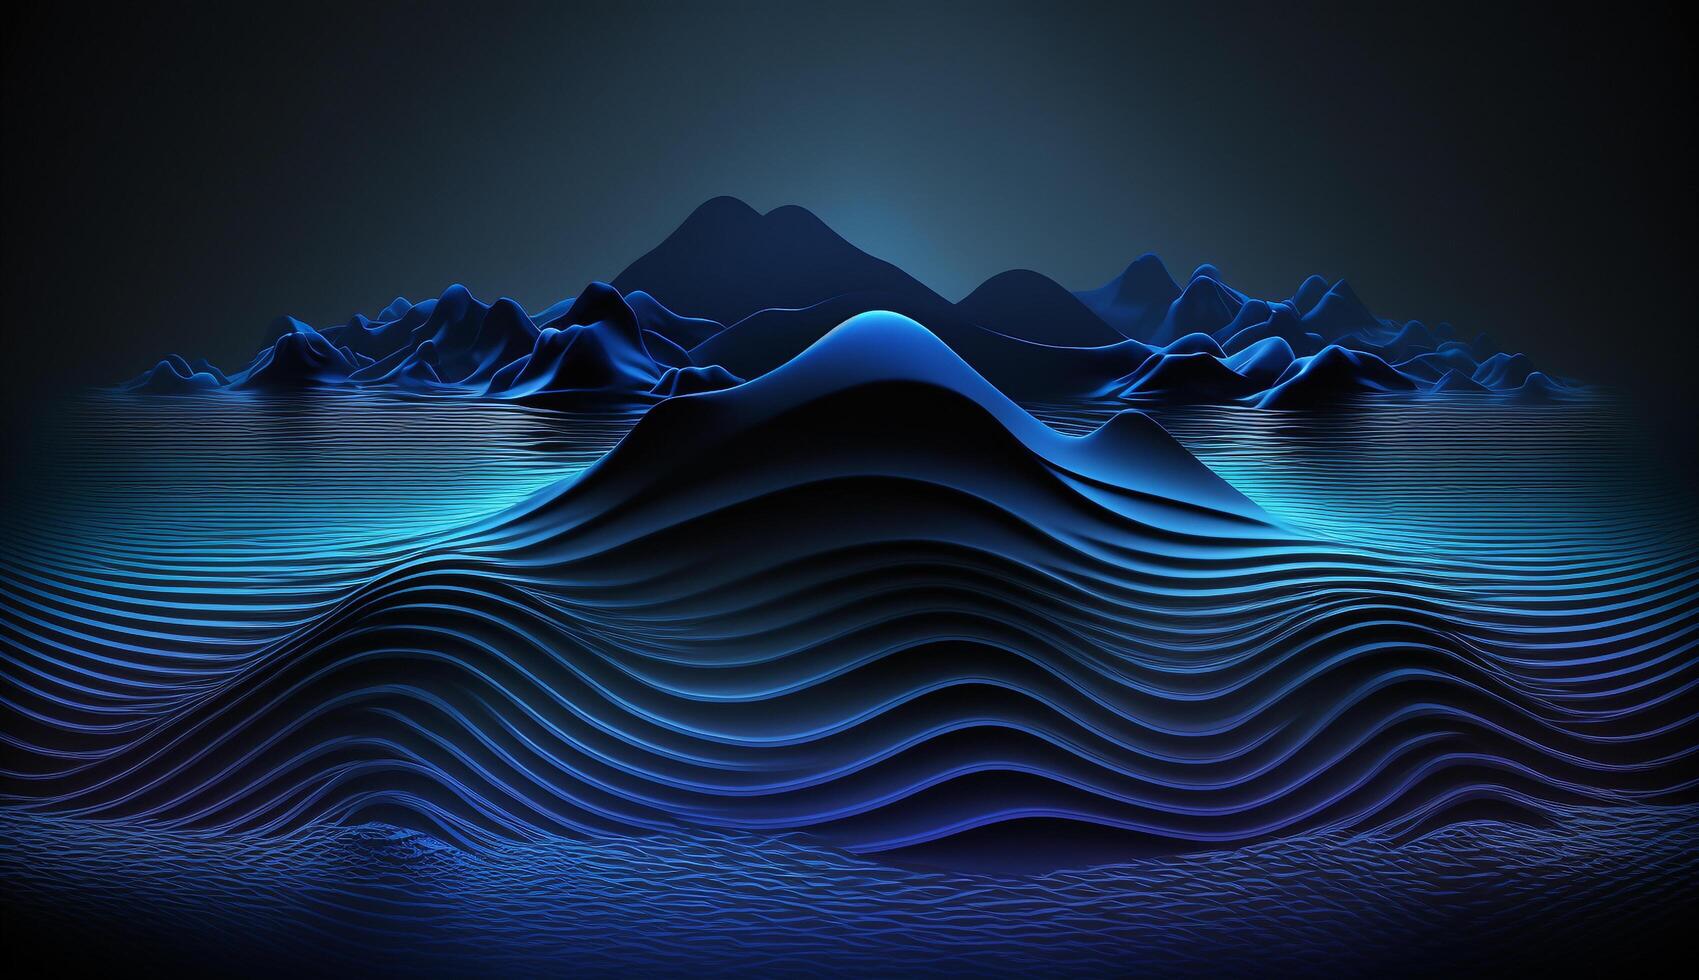 Abstract modern dark blue digital wave background, photo